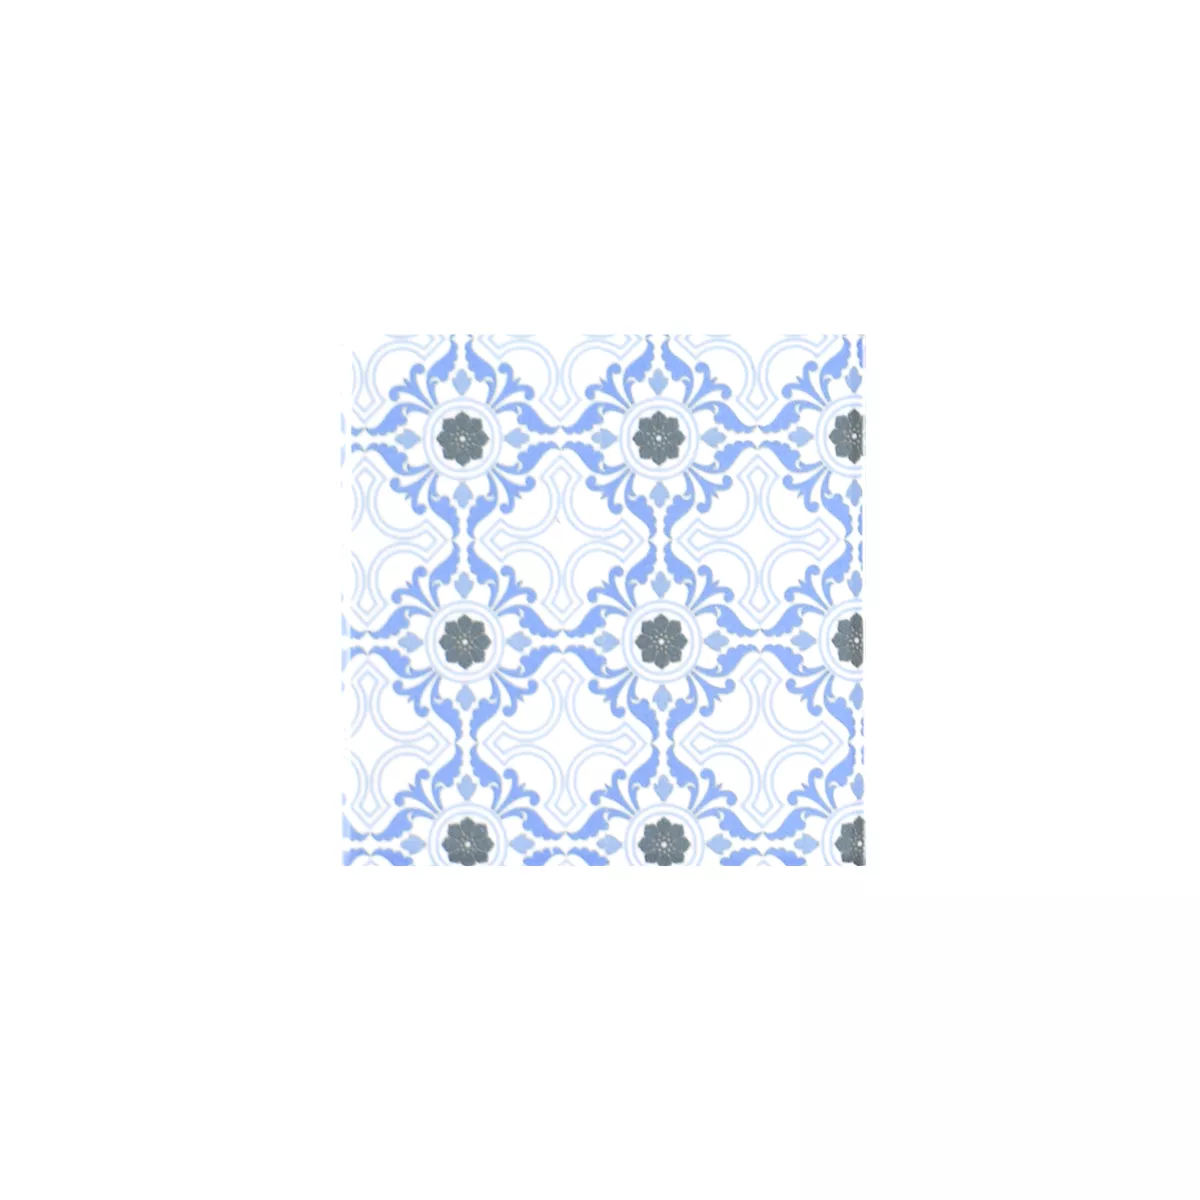 Vzorek Keramika Mozaiková Dlaždice Daymion Retro Vzhled Modrá 